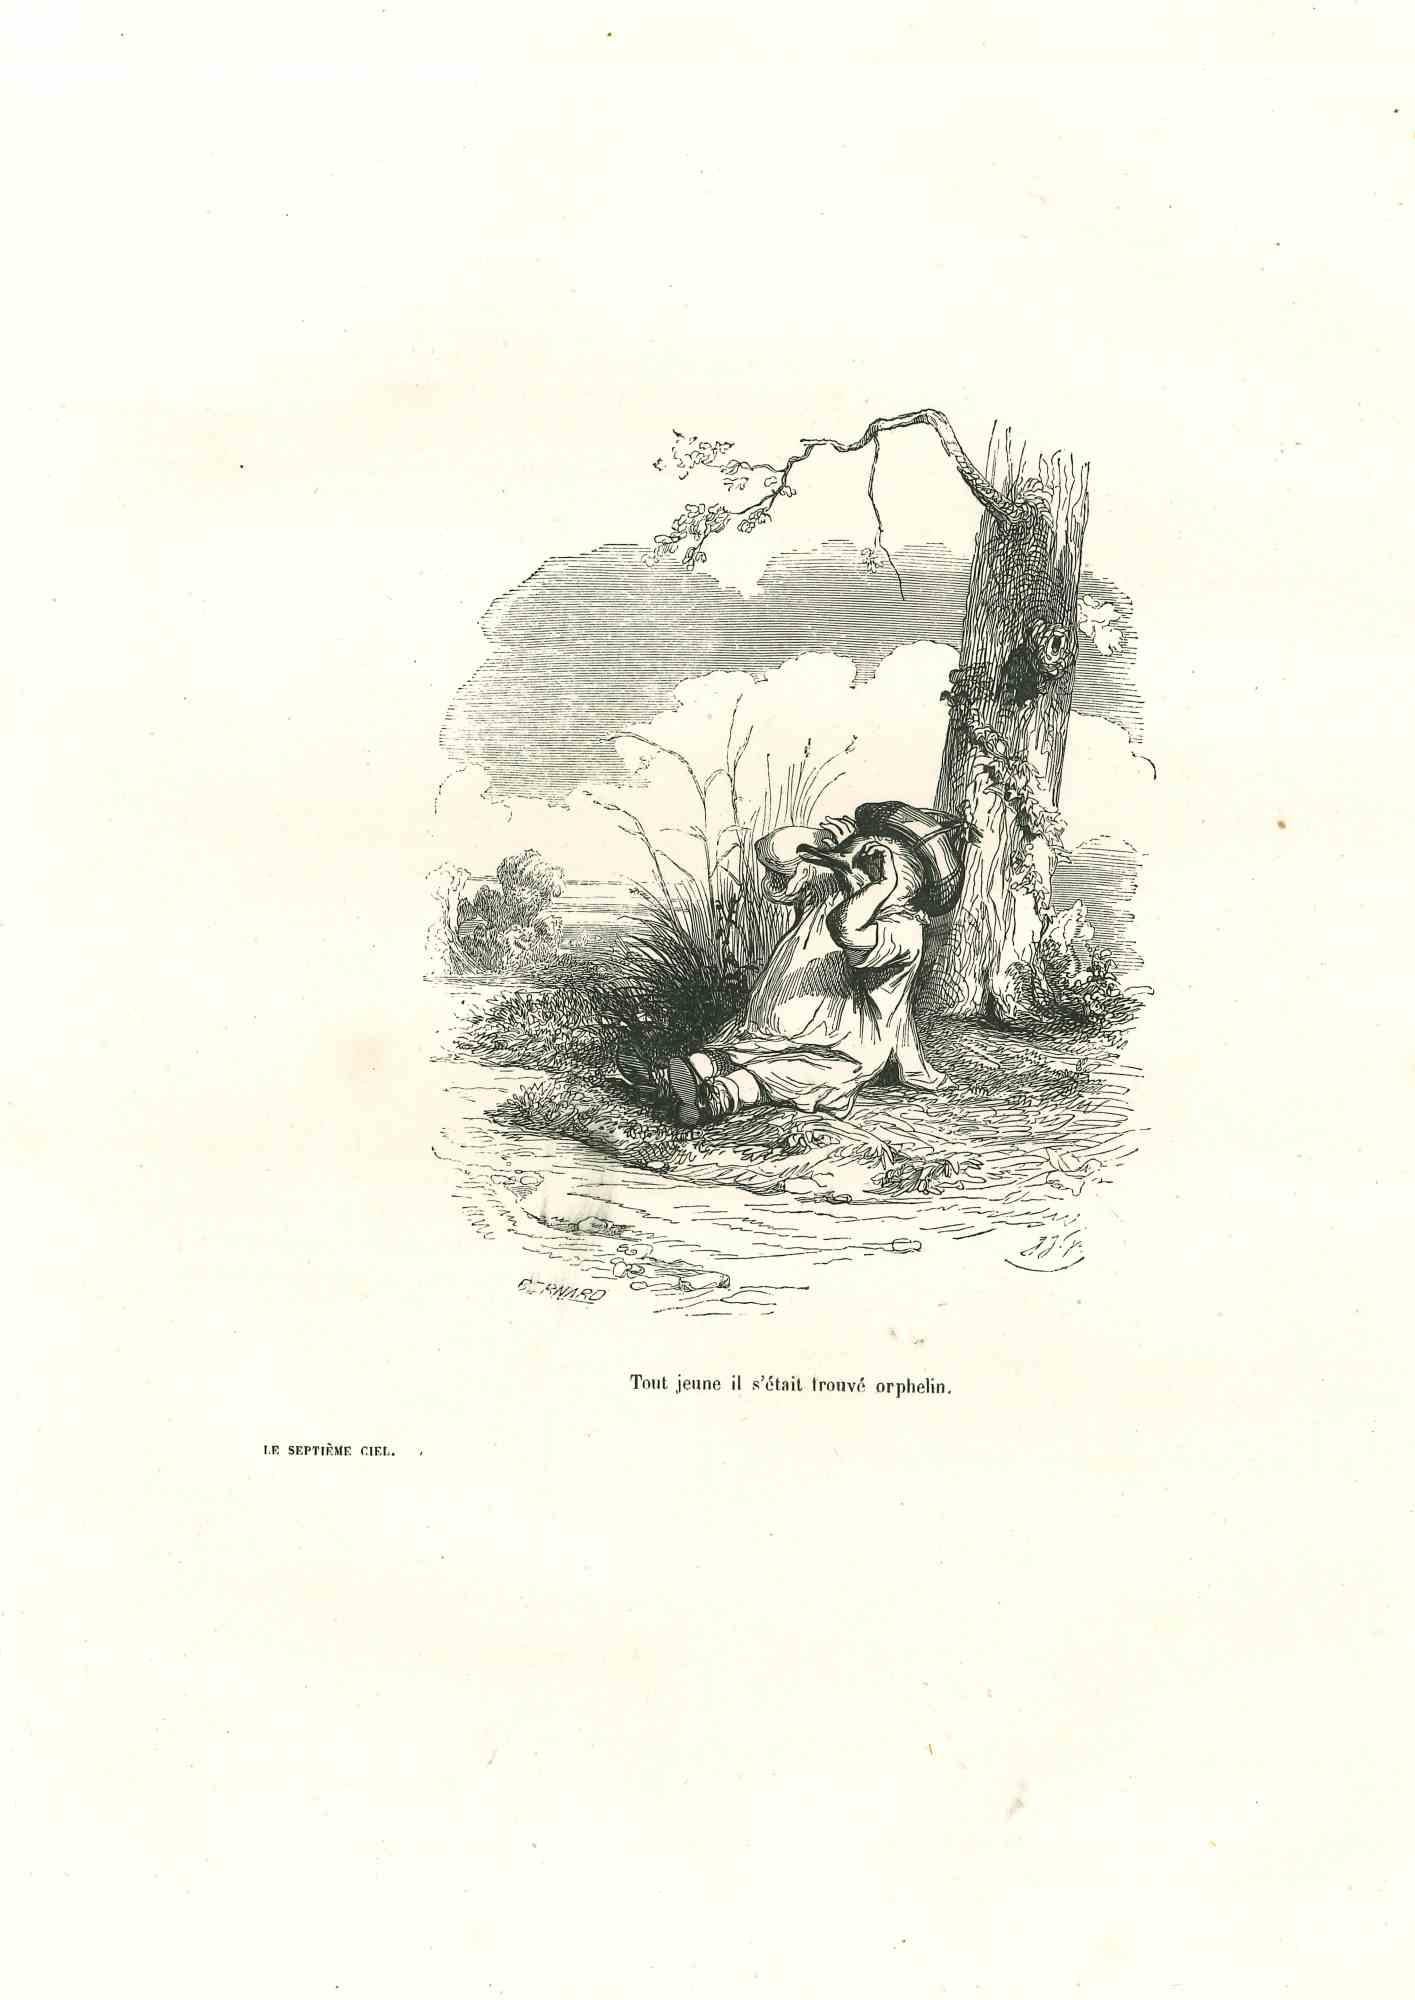 Jean Jeacques Grandville Figurative Print - Orphan Bird "Tout Jeune il s'était trouve orphelin" by J.J Grandville - 1852